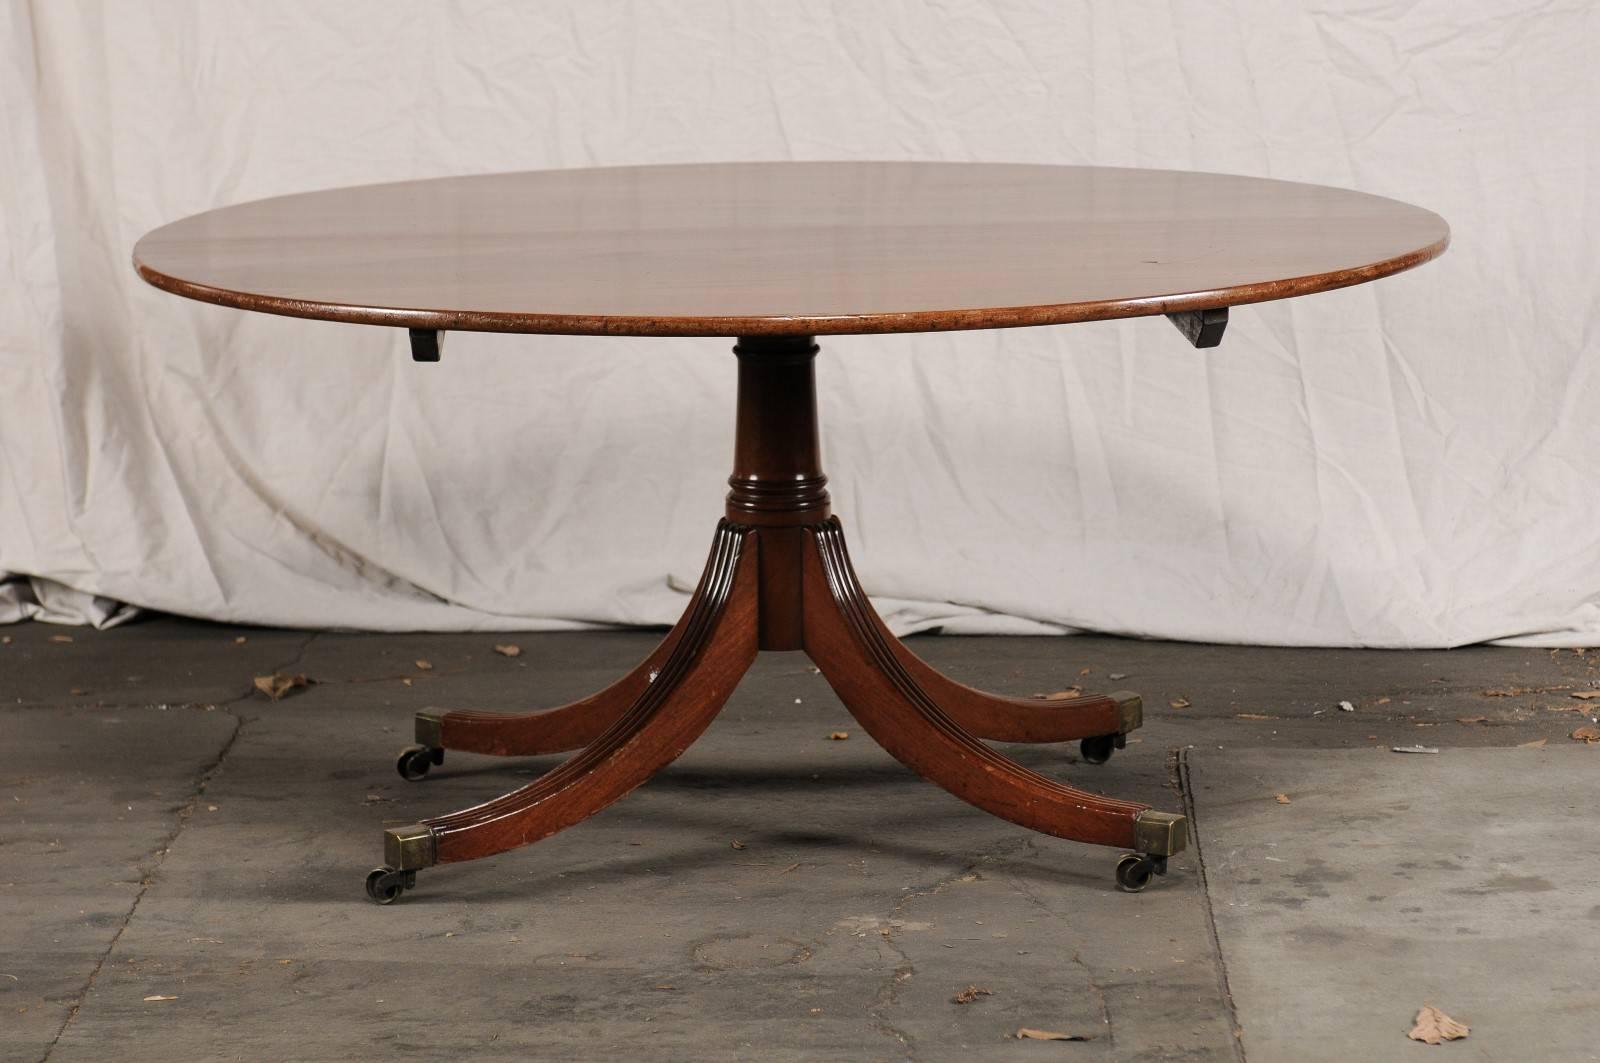 English Regency round mahogany dining table, circa 1800.